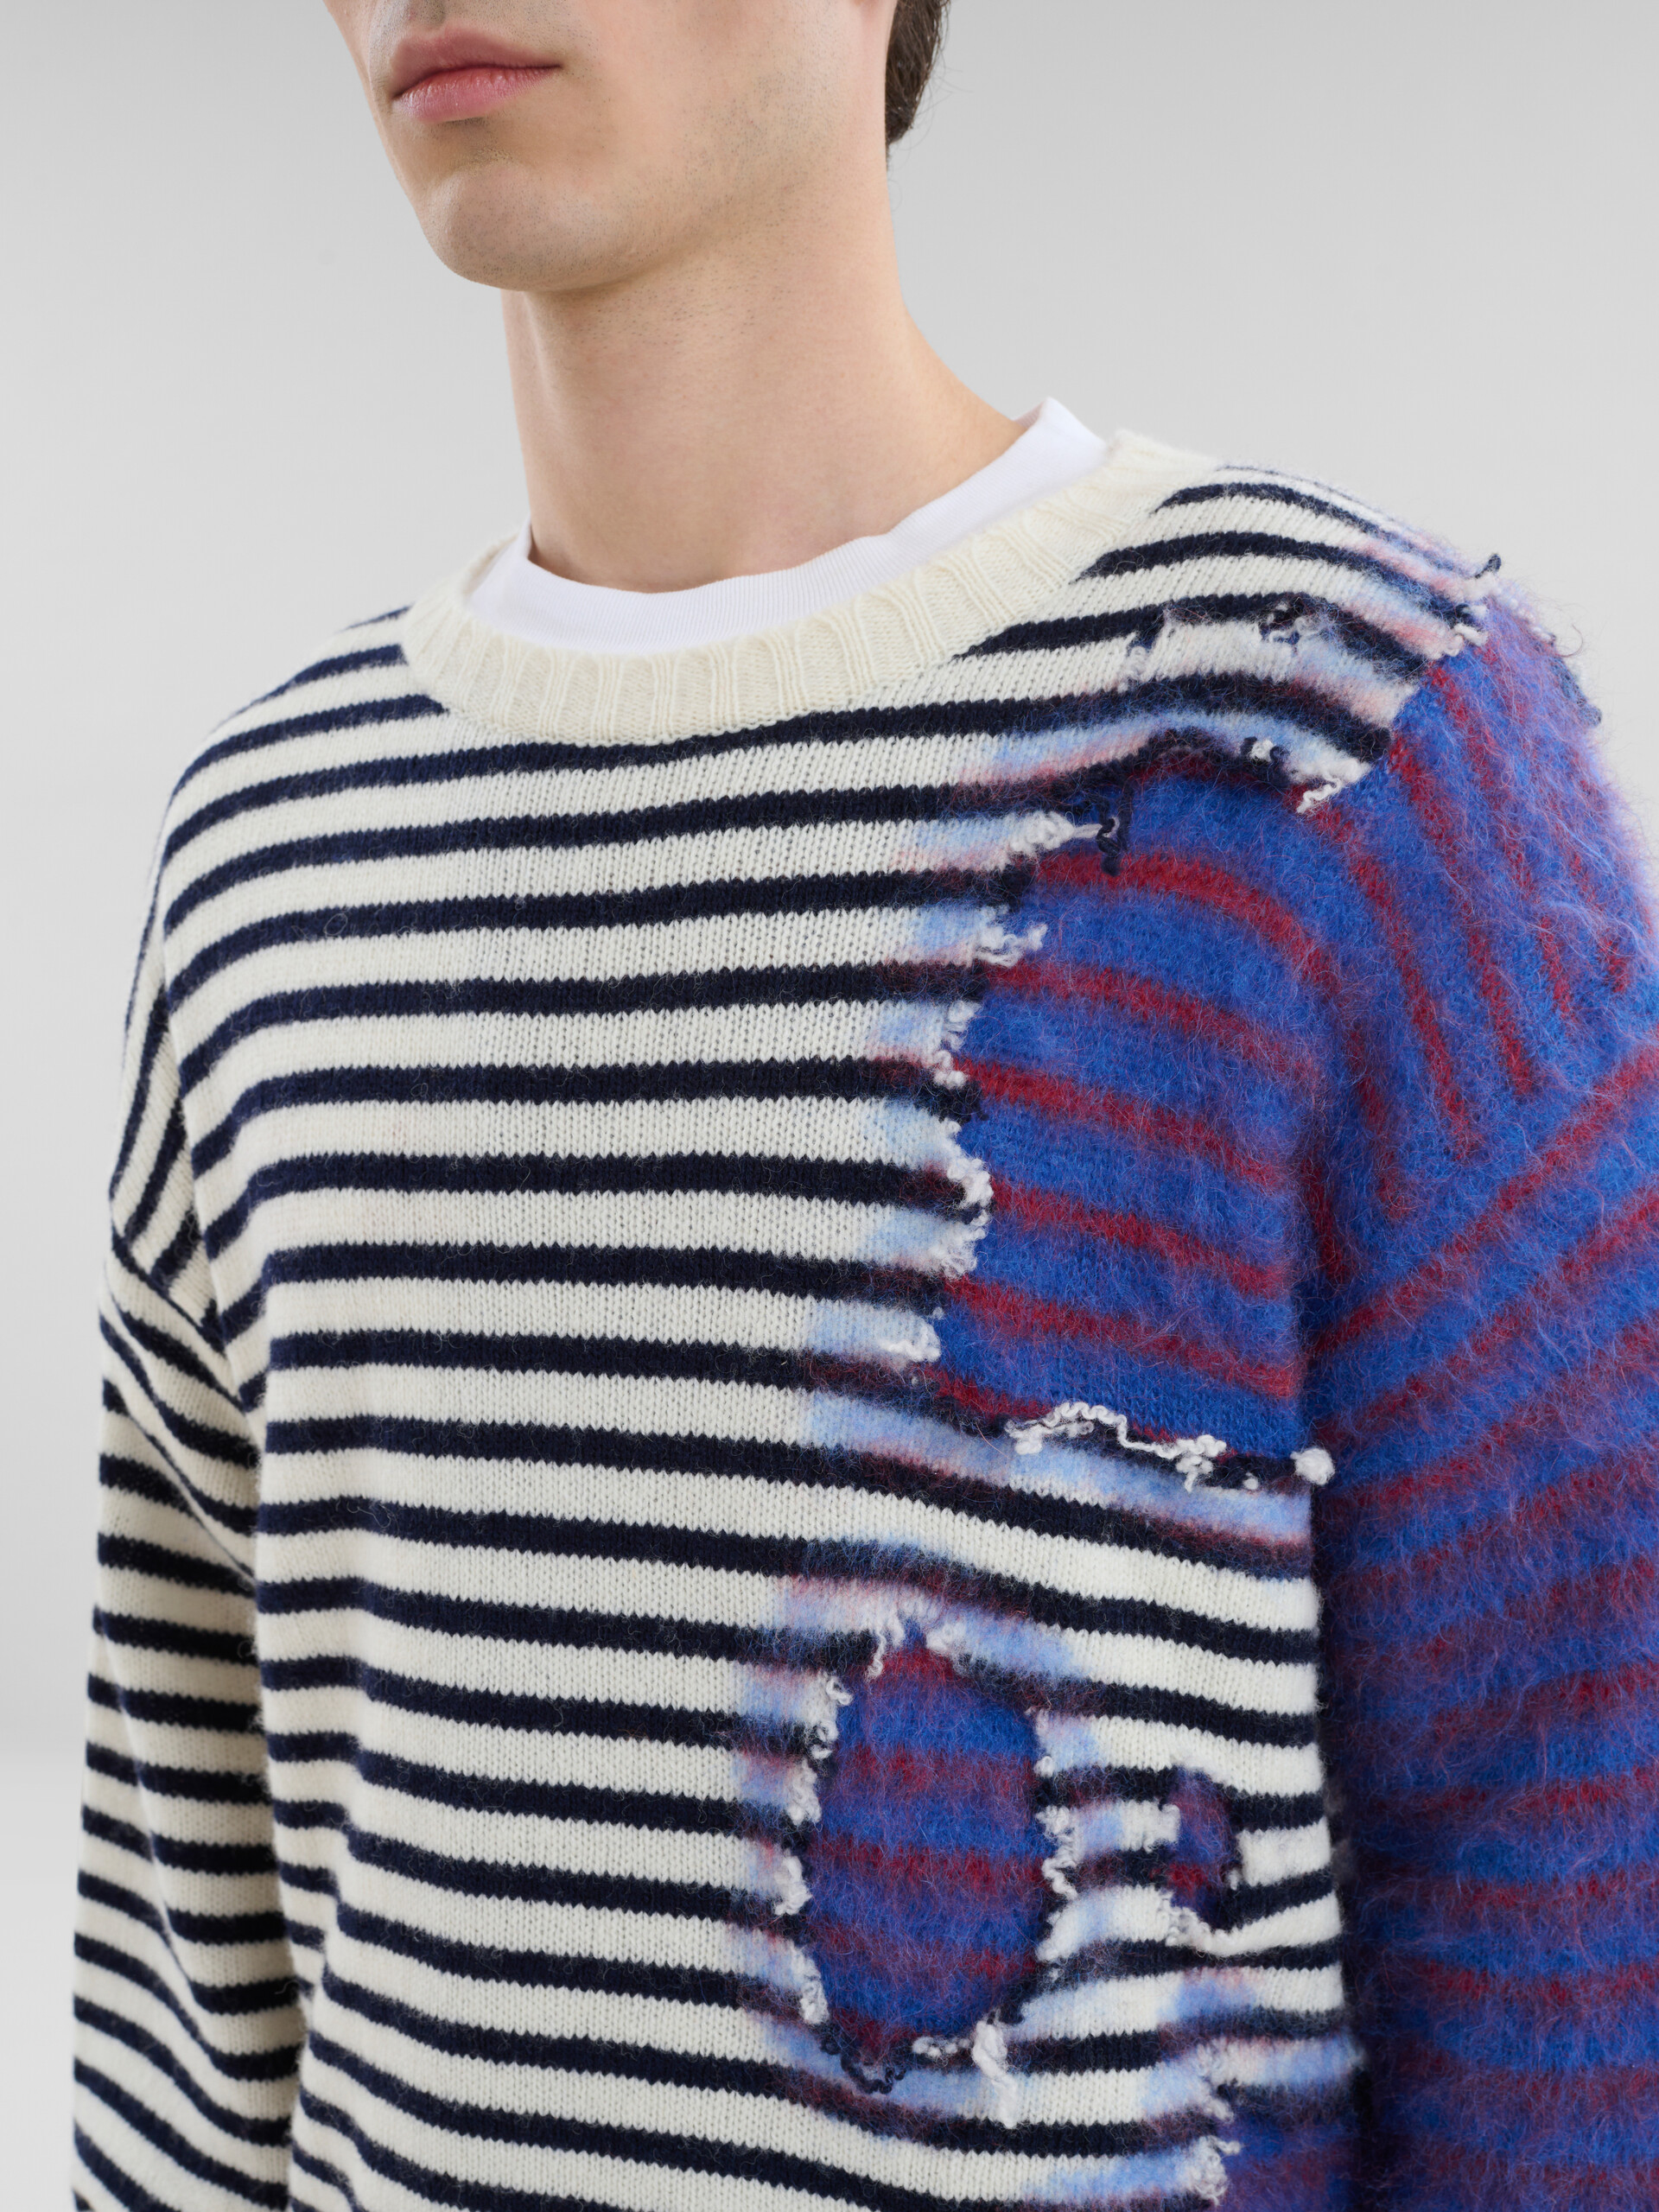 Jersey dos en uno multicolor de lana y mohair a rayas - jerseys - Image 4